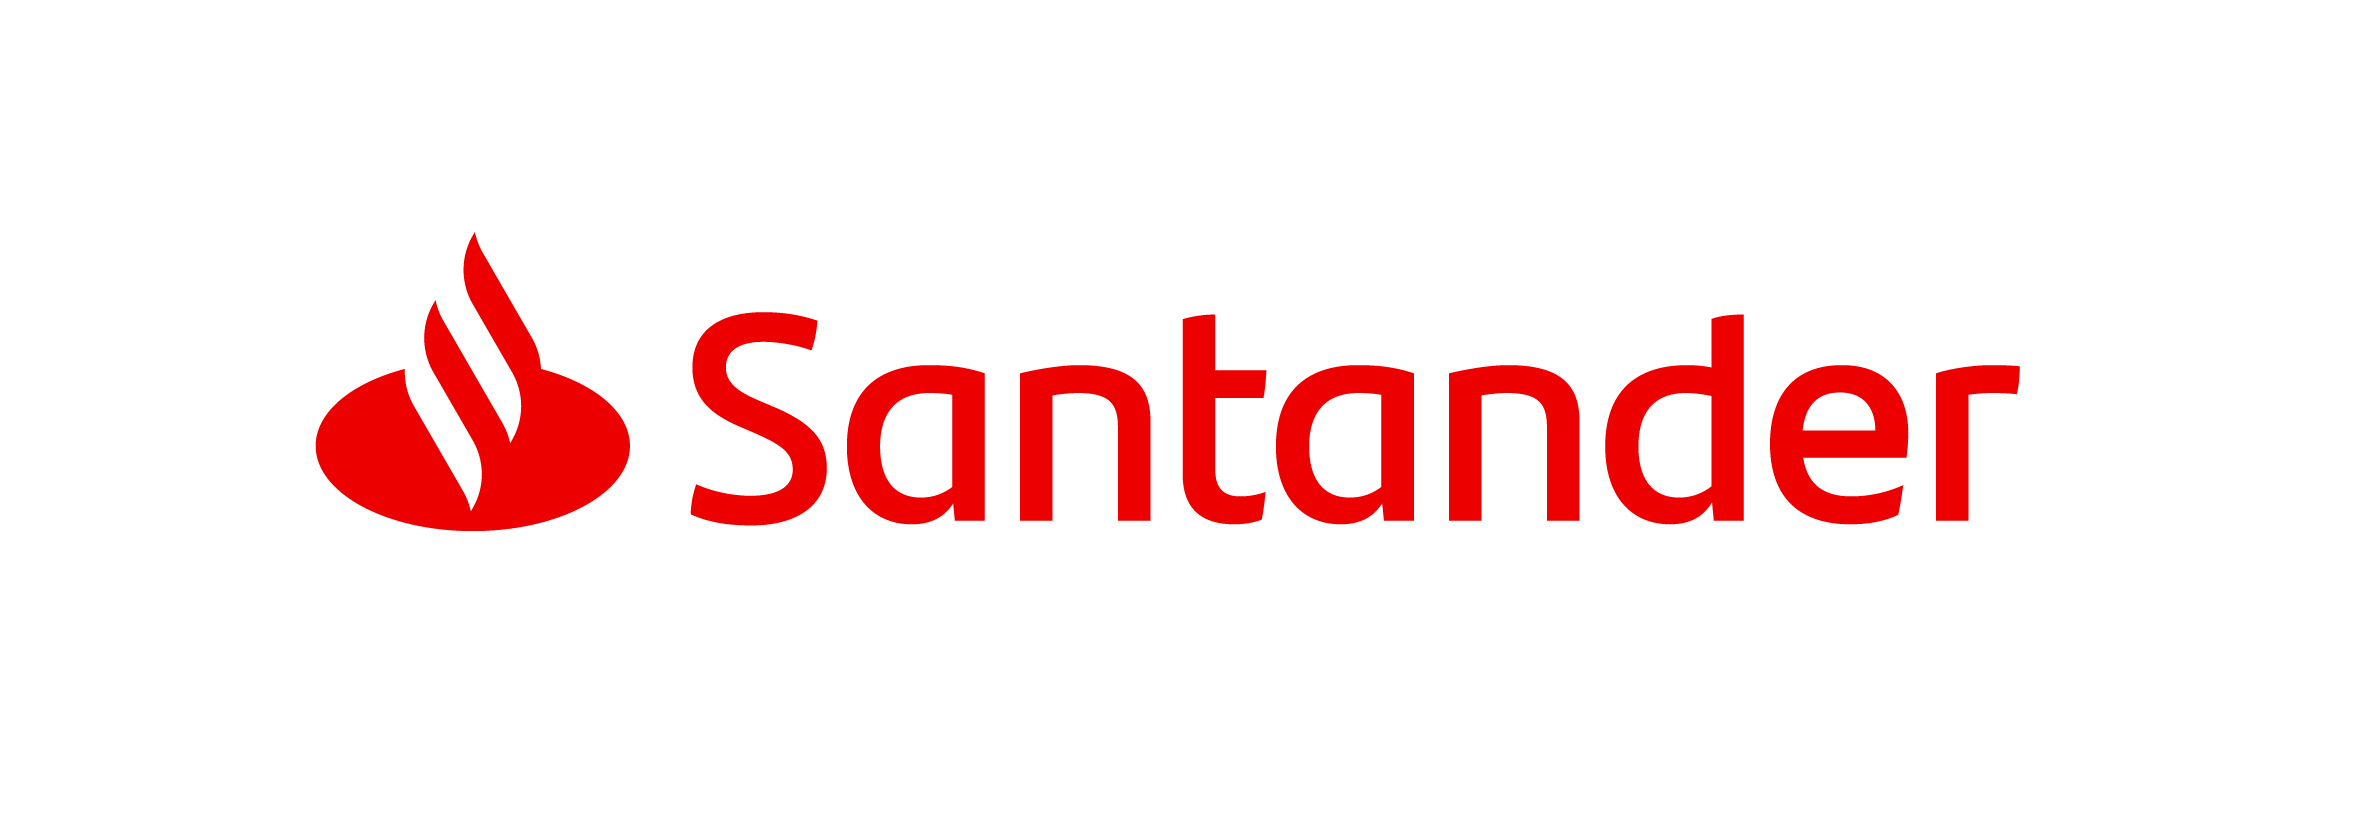 US$ 20 millones invierte el Santander en nueva plataforma